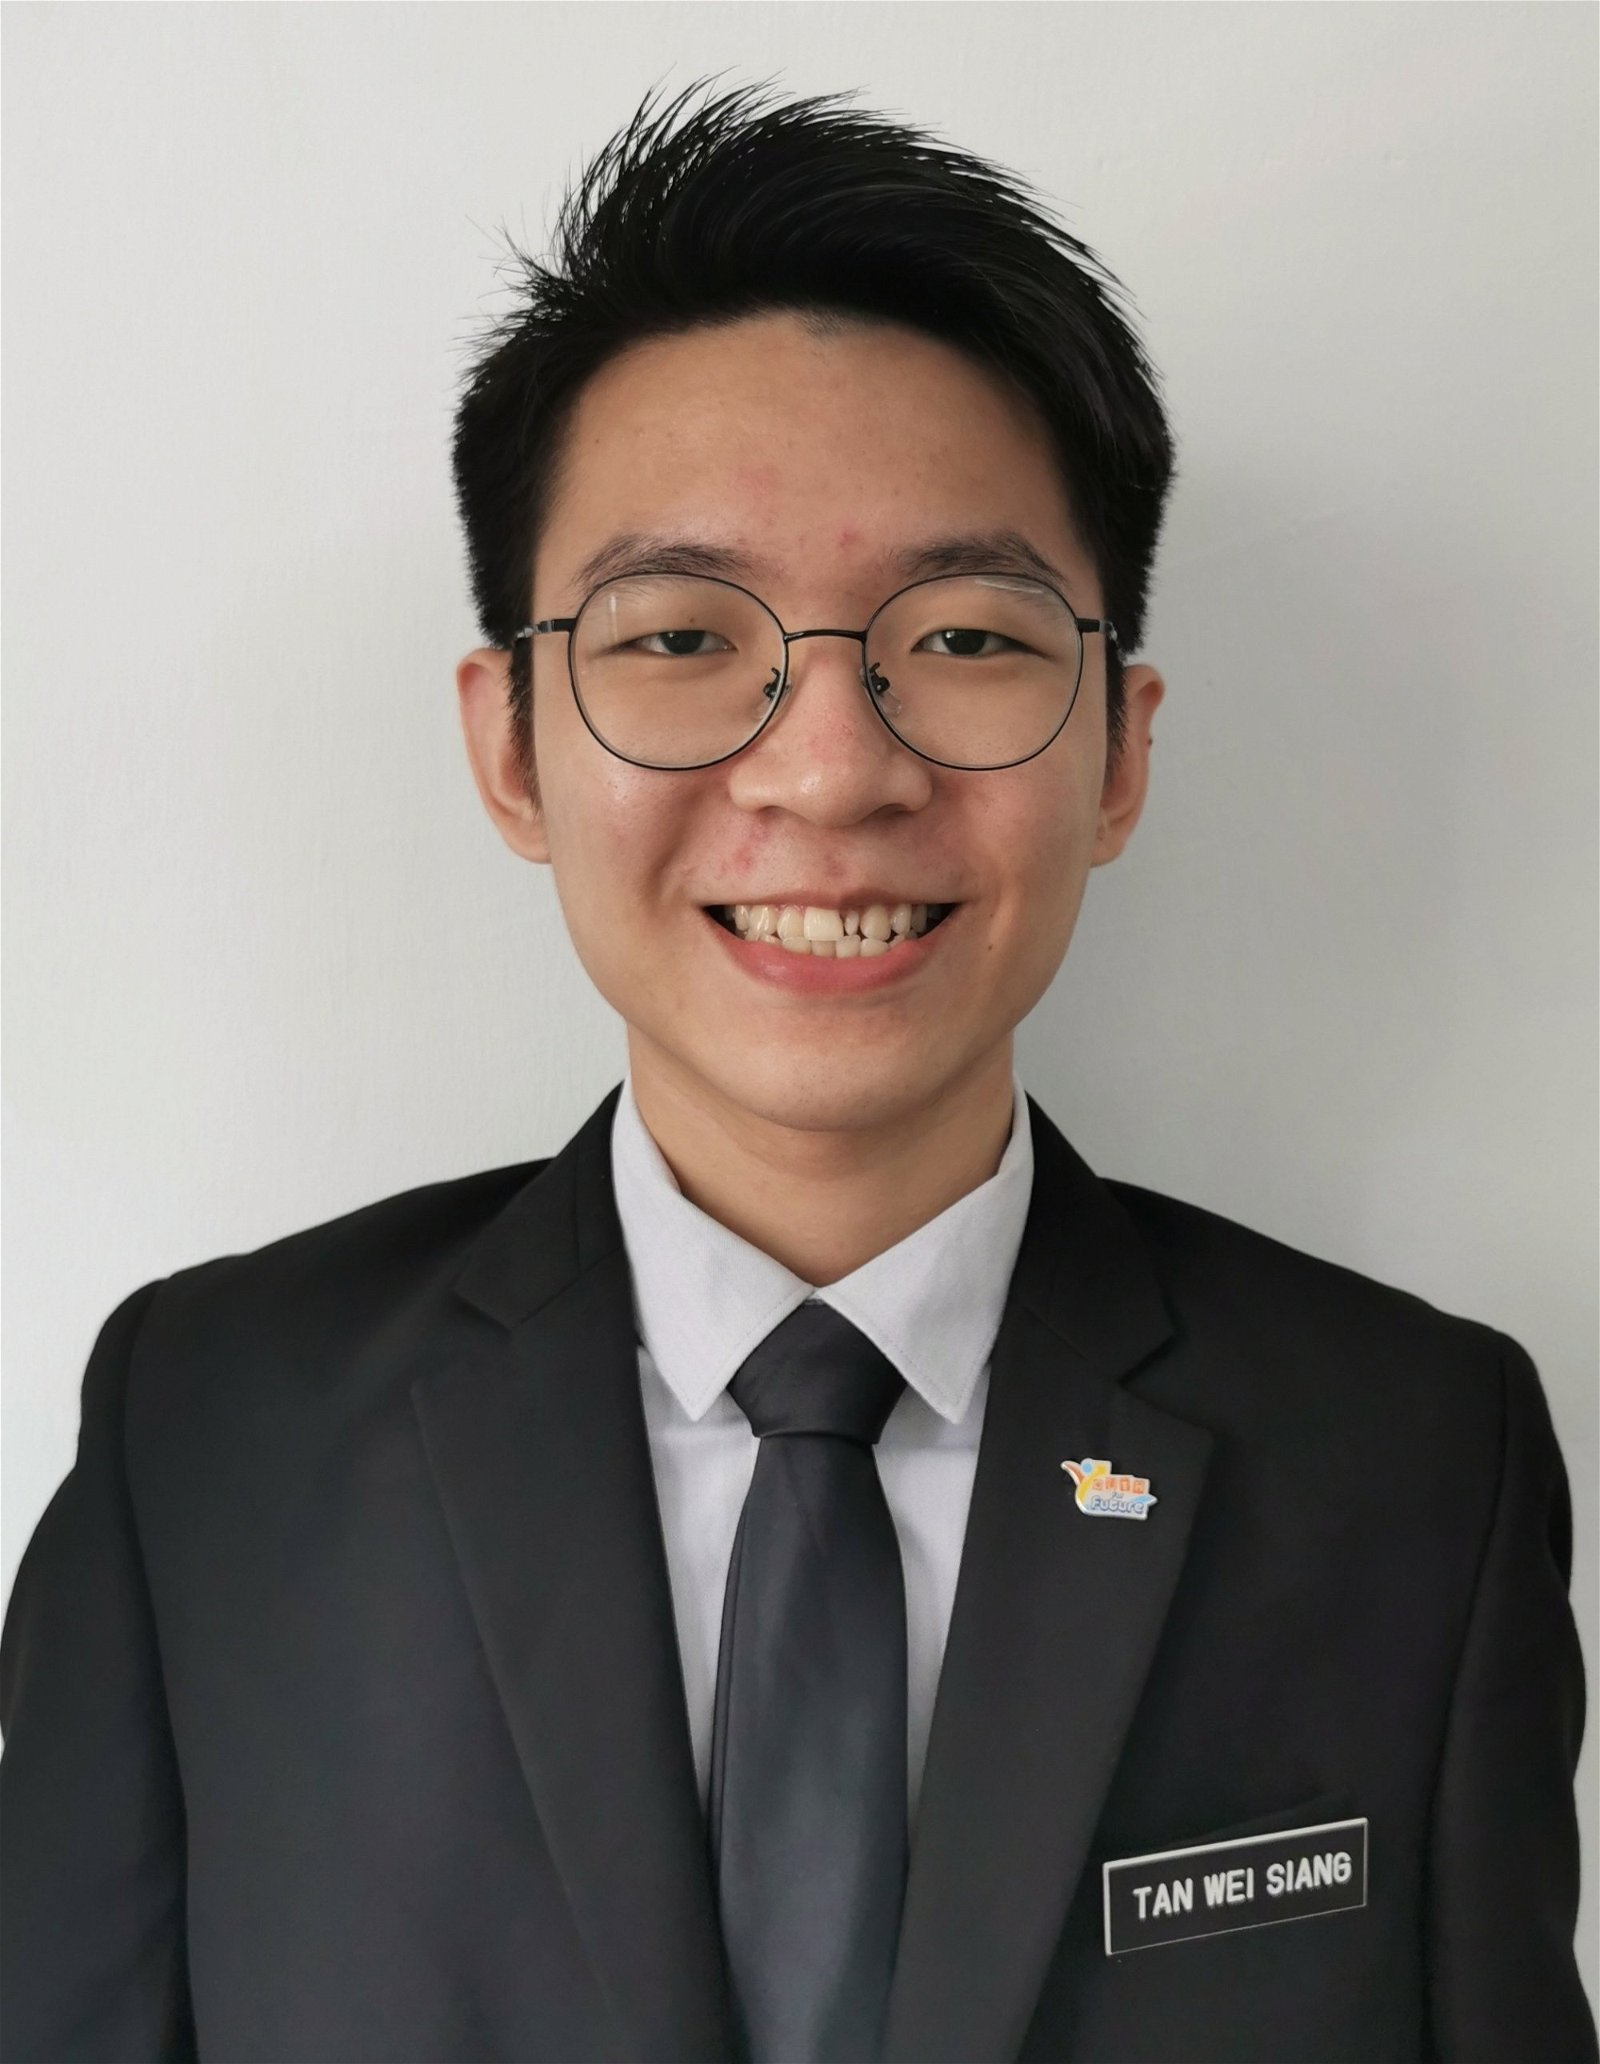 陈玮祥，APU软件工程学生。